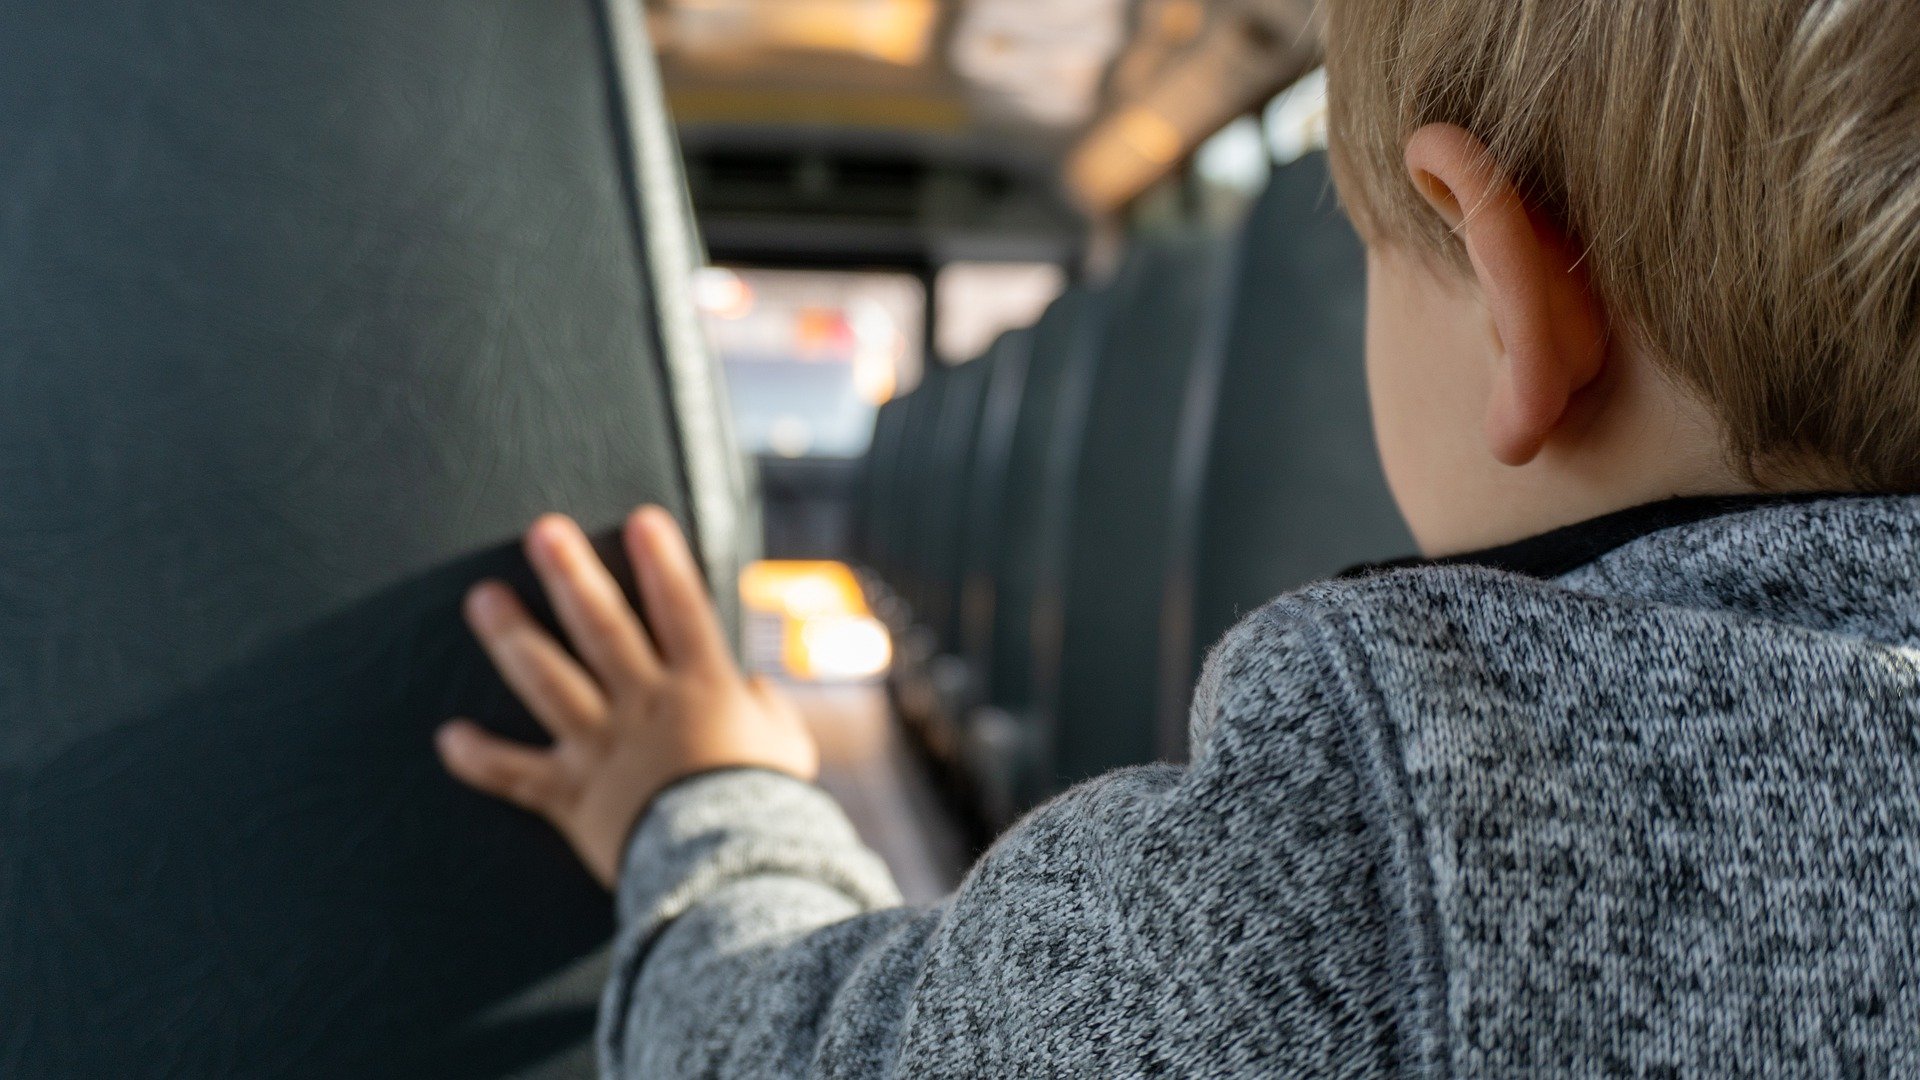 Niño mirando hacia el frente de un autobús desde el asiento trasero del vehículo. | Foto: Pixabay